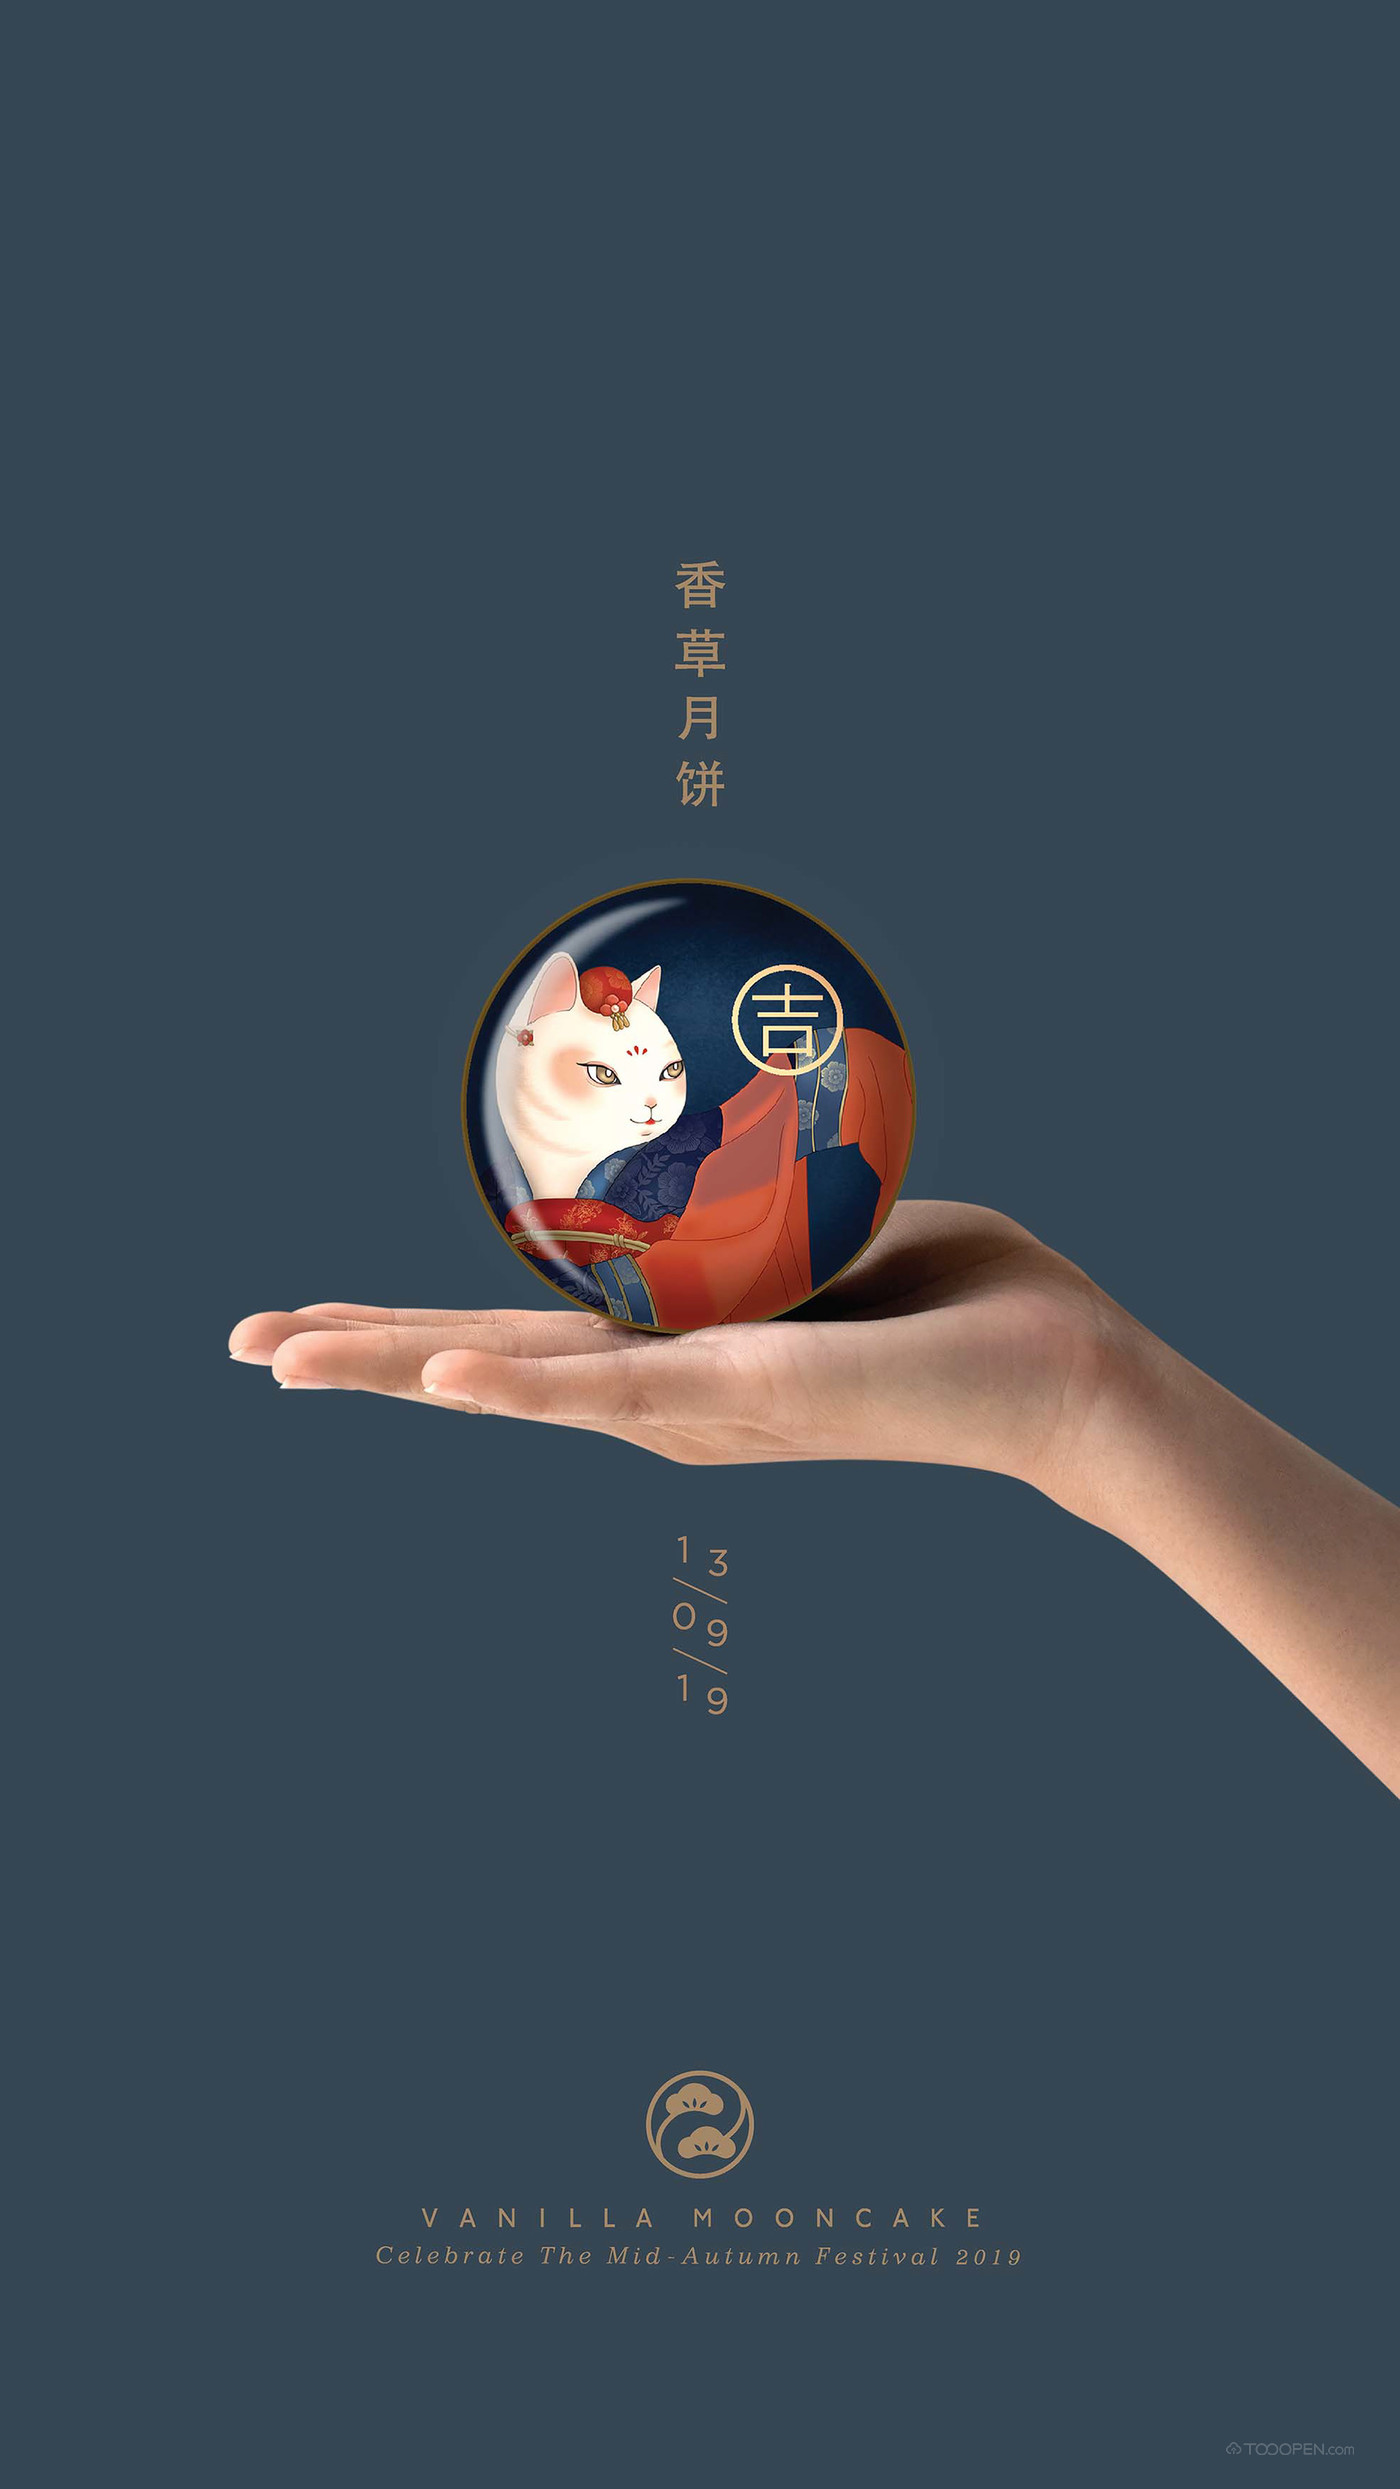 吉祥福寿中式月饼中秋佳节食品包装设计作品欣赏-09